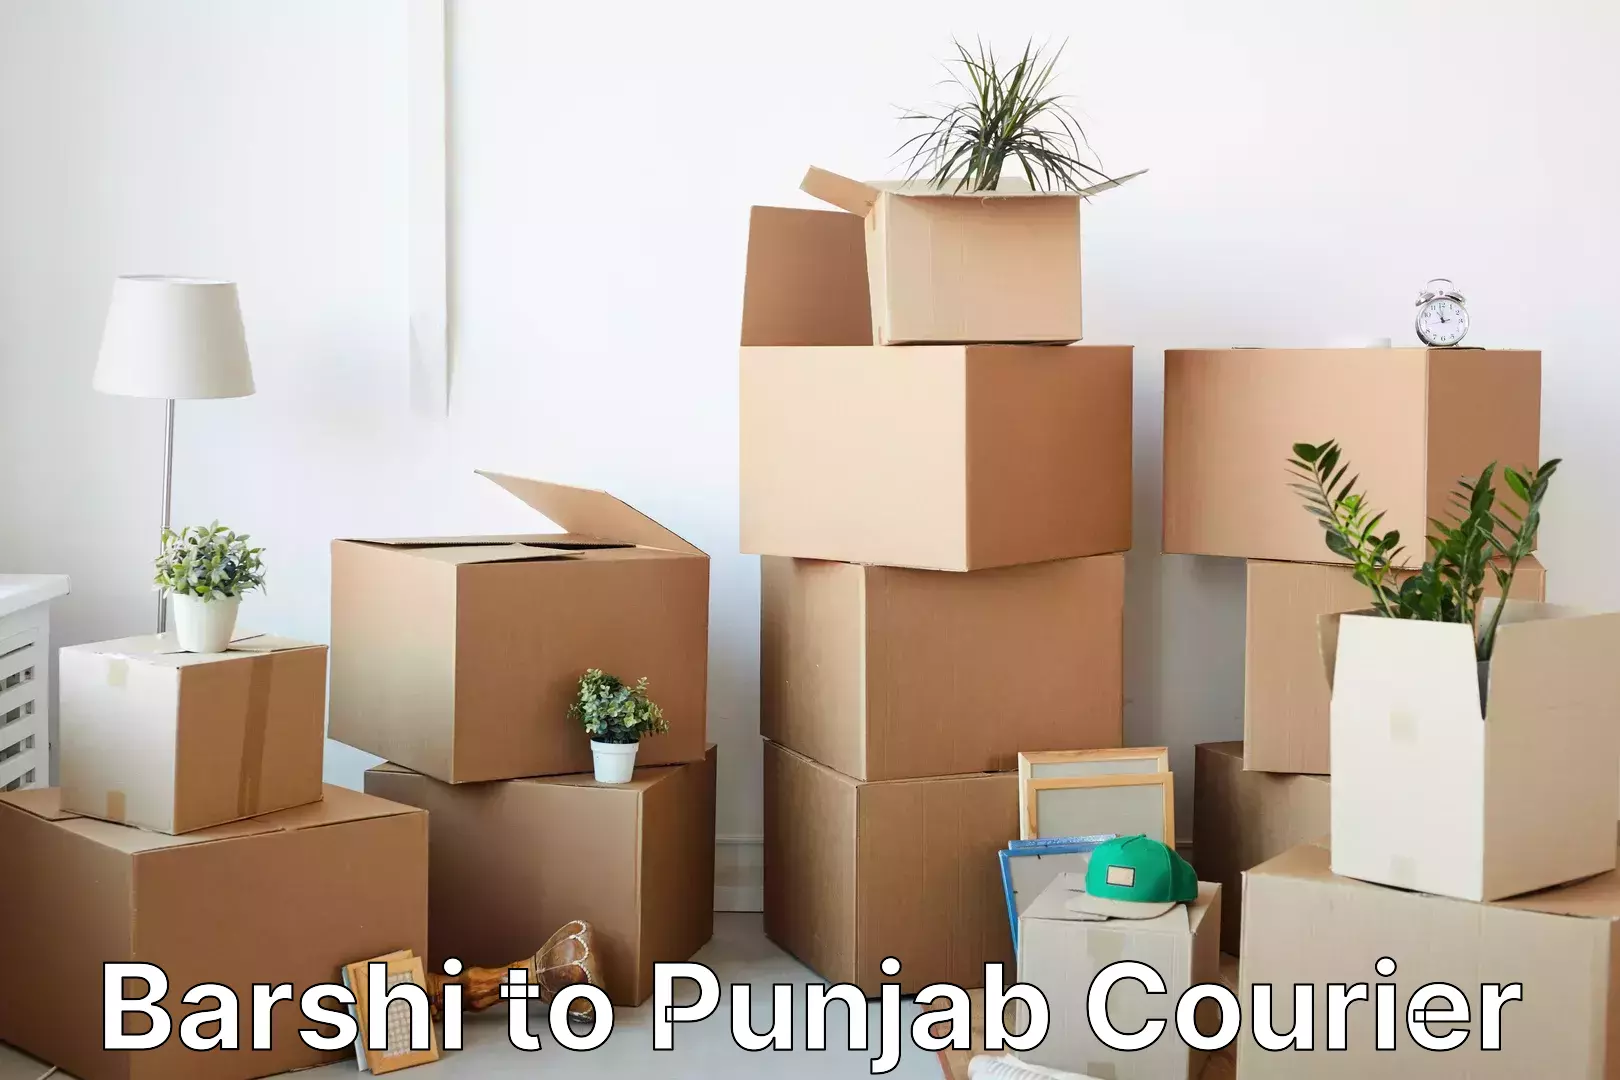 Urgent luggage shipment Barshi to Punjab